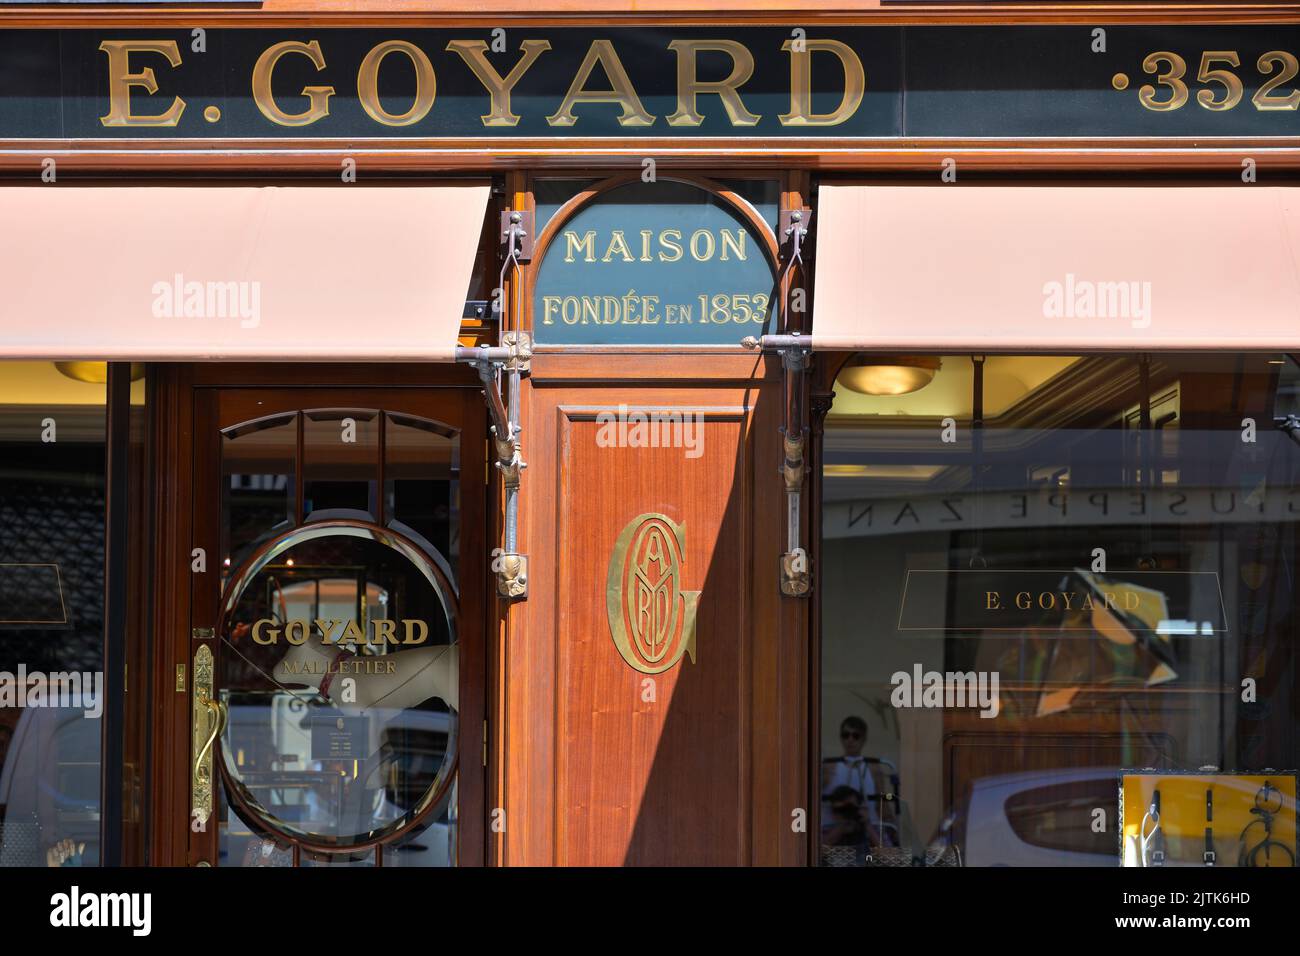 Le magasin phare de la Maison Goyard connu pour ses malles de luxe et sa maroquinerie, Paris FR Banque D'Images